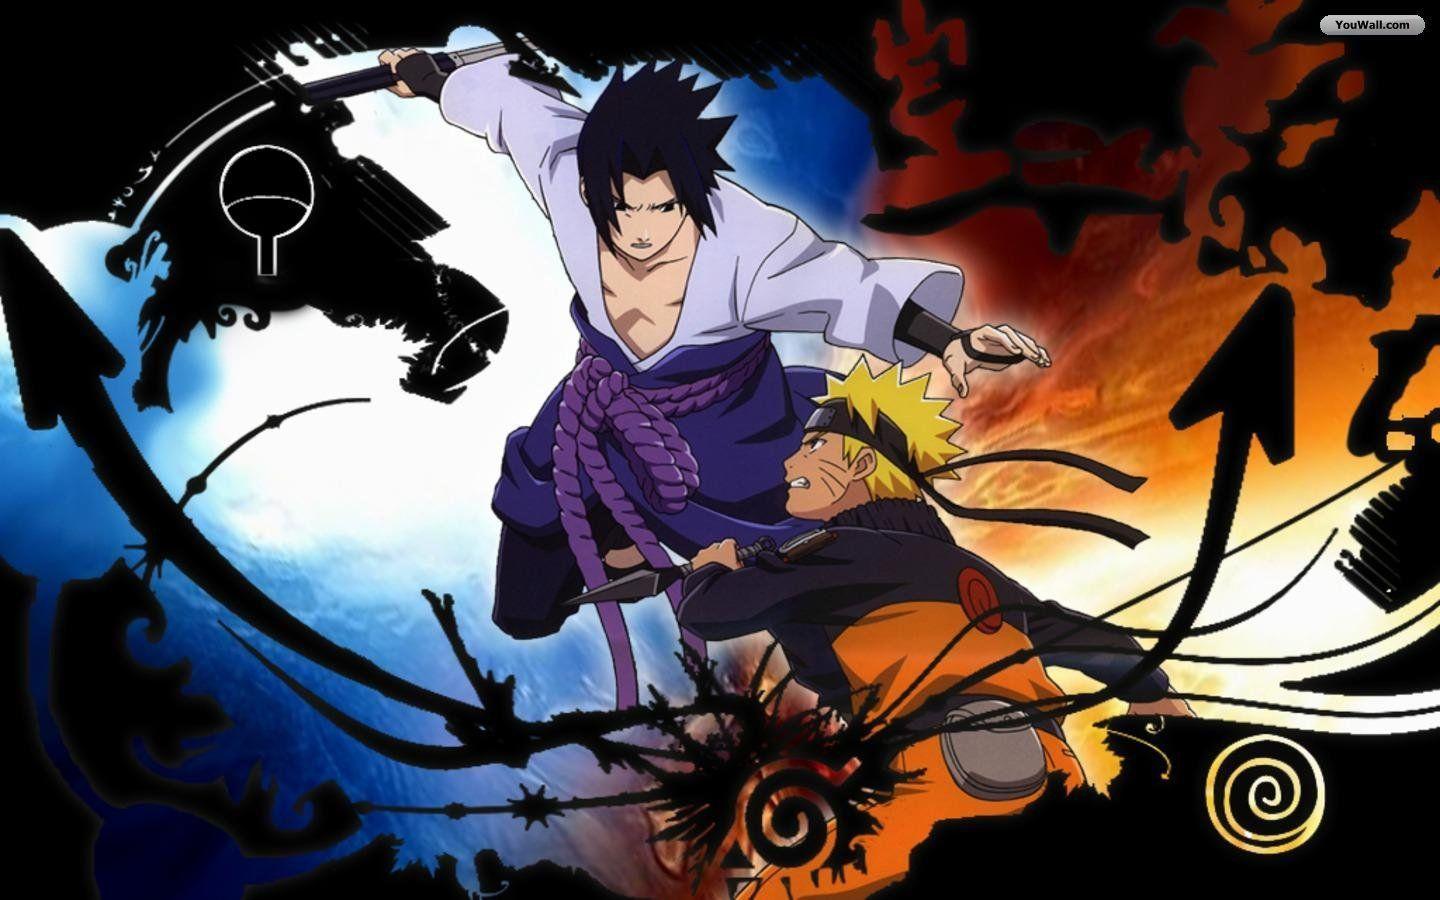 Naruto vs Sasuke hình nền sẽ khiến bạn cảm thấy như đang đắm chìm trong cuộc chiến đỉnh cao giữa hai nhân vật này. Hãy chứng kiến sự đối đầu và động trời của hai ninja mạnh nhất thế giới Naruto.